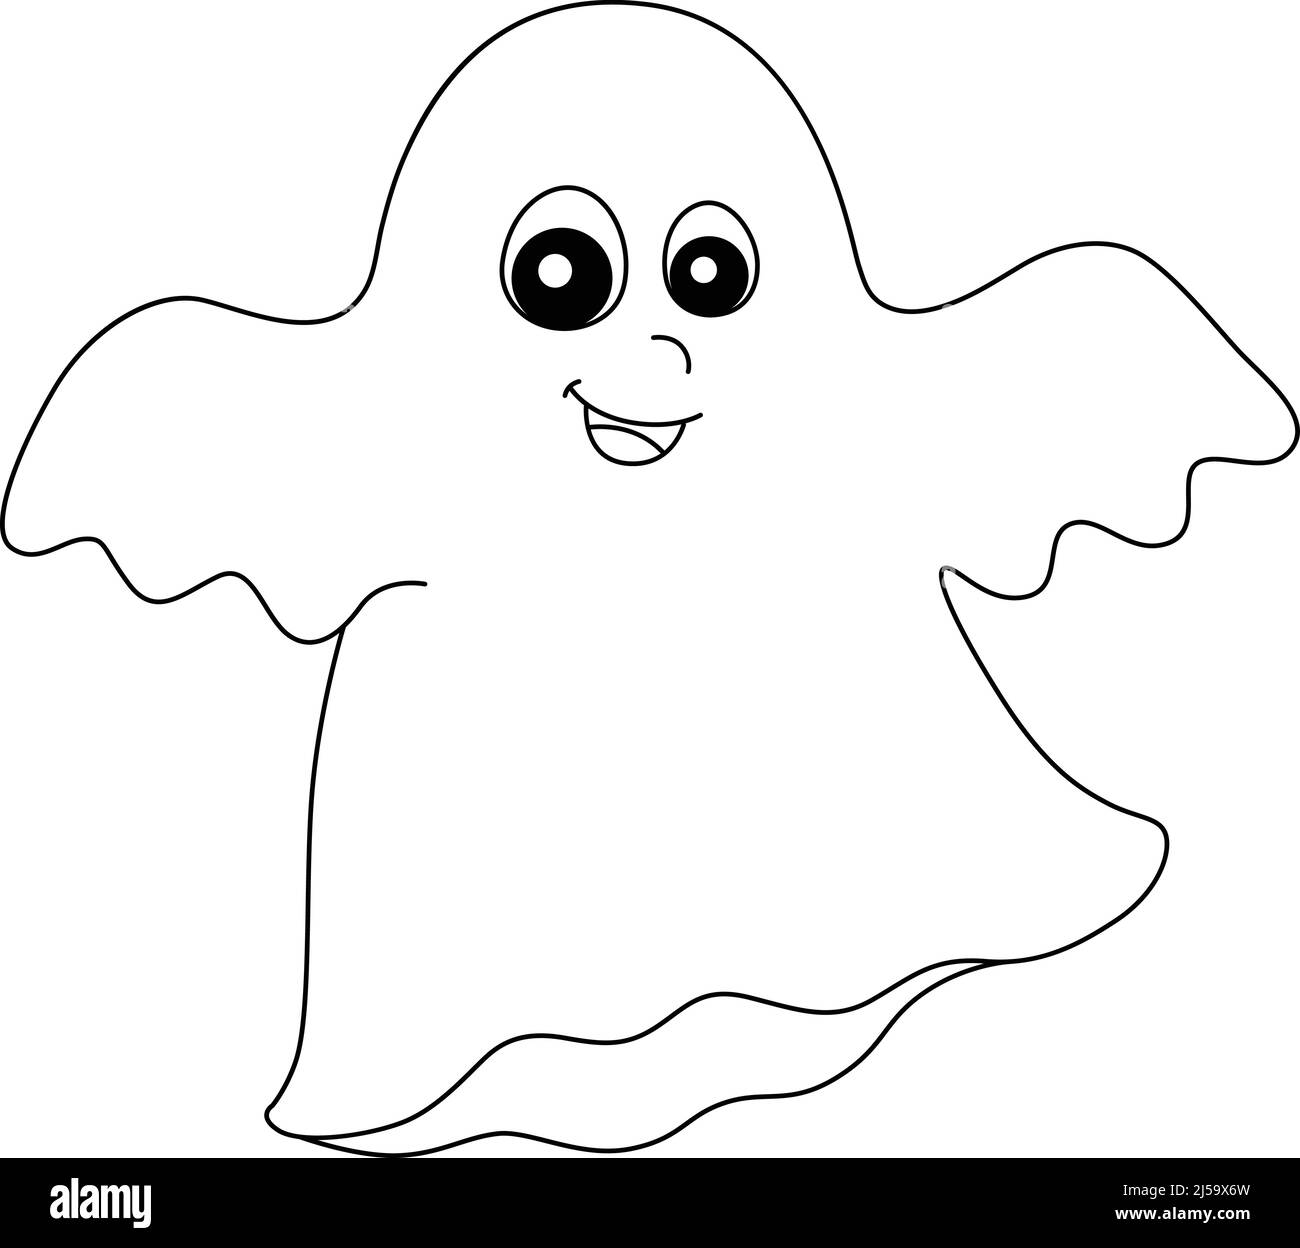 Page de coloriage Halloween fantôme isolée pour enfants Image ...